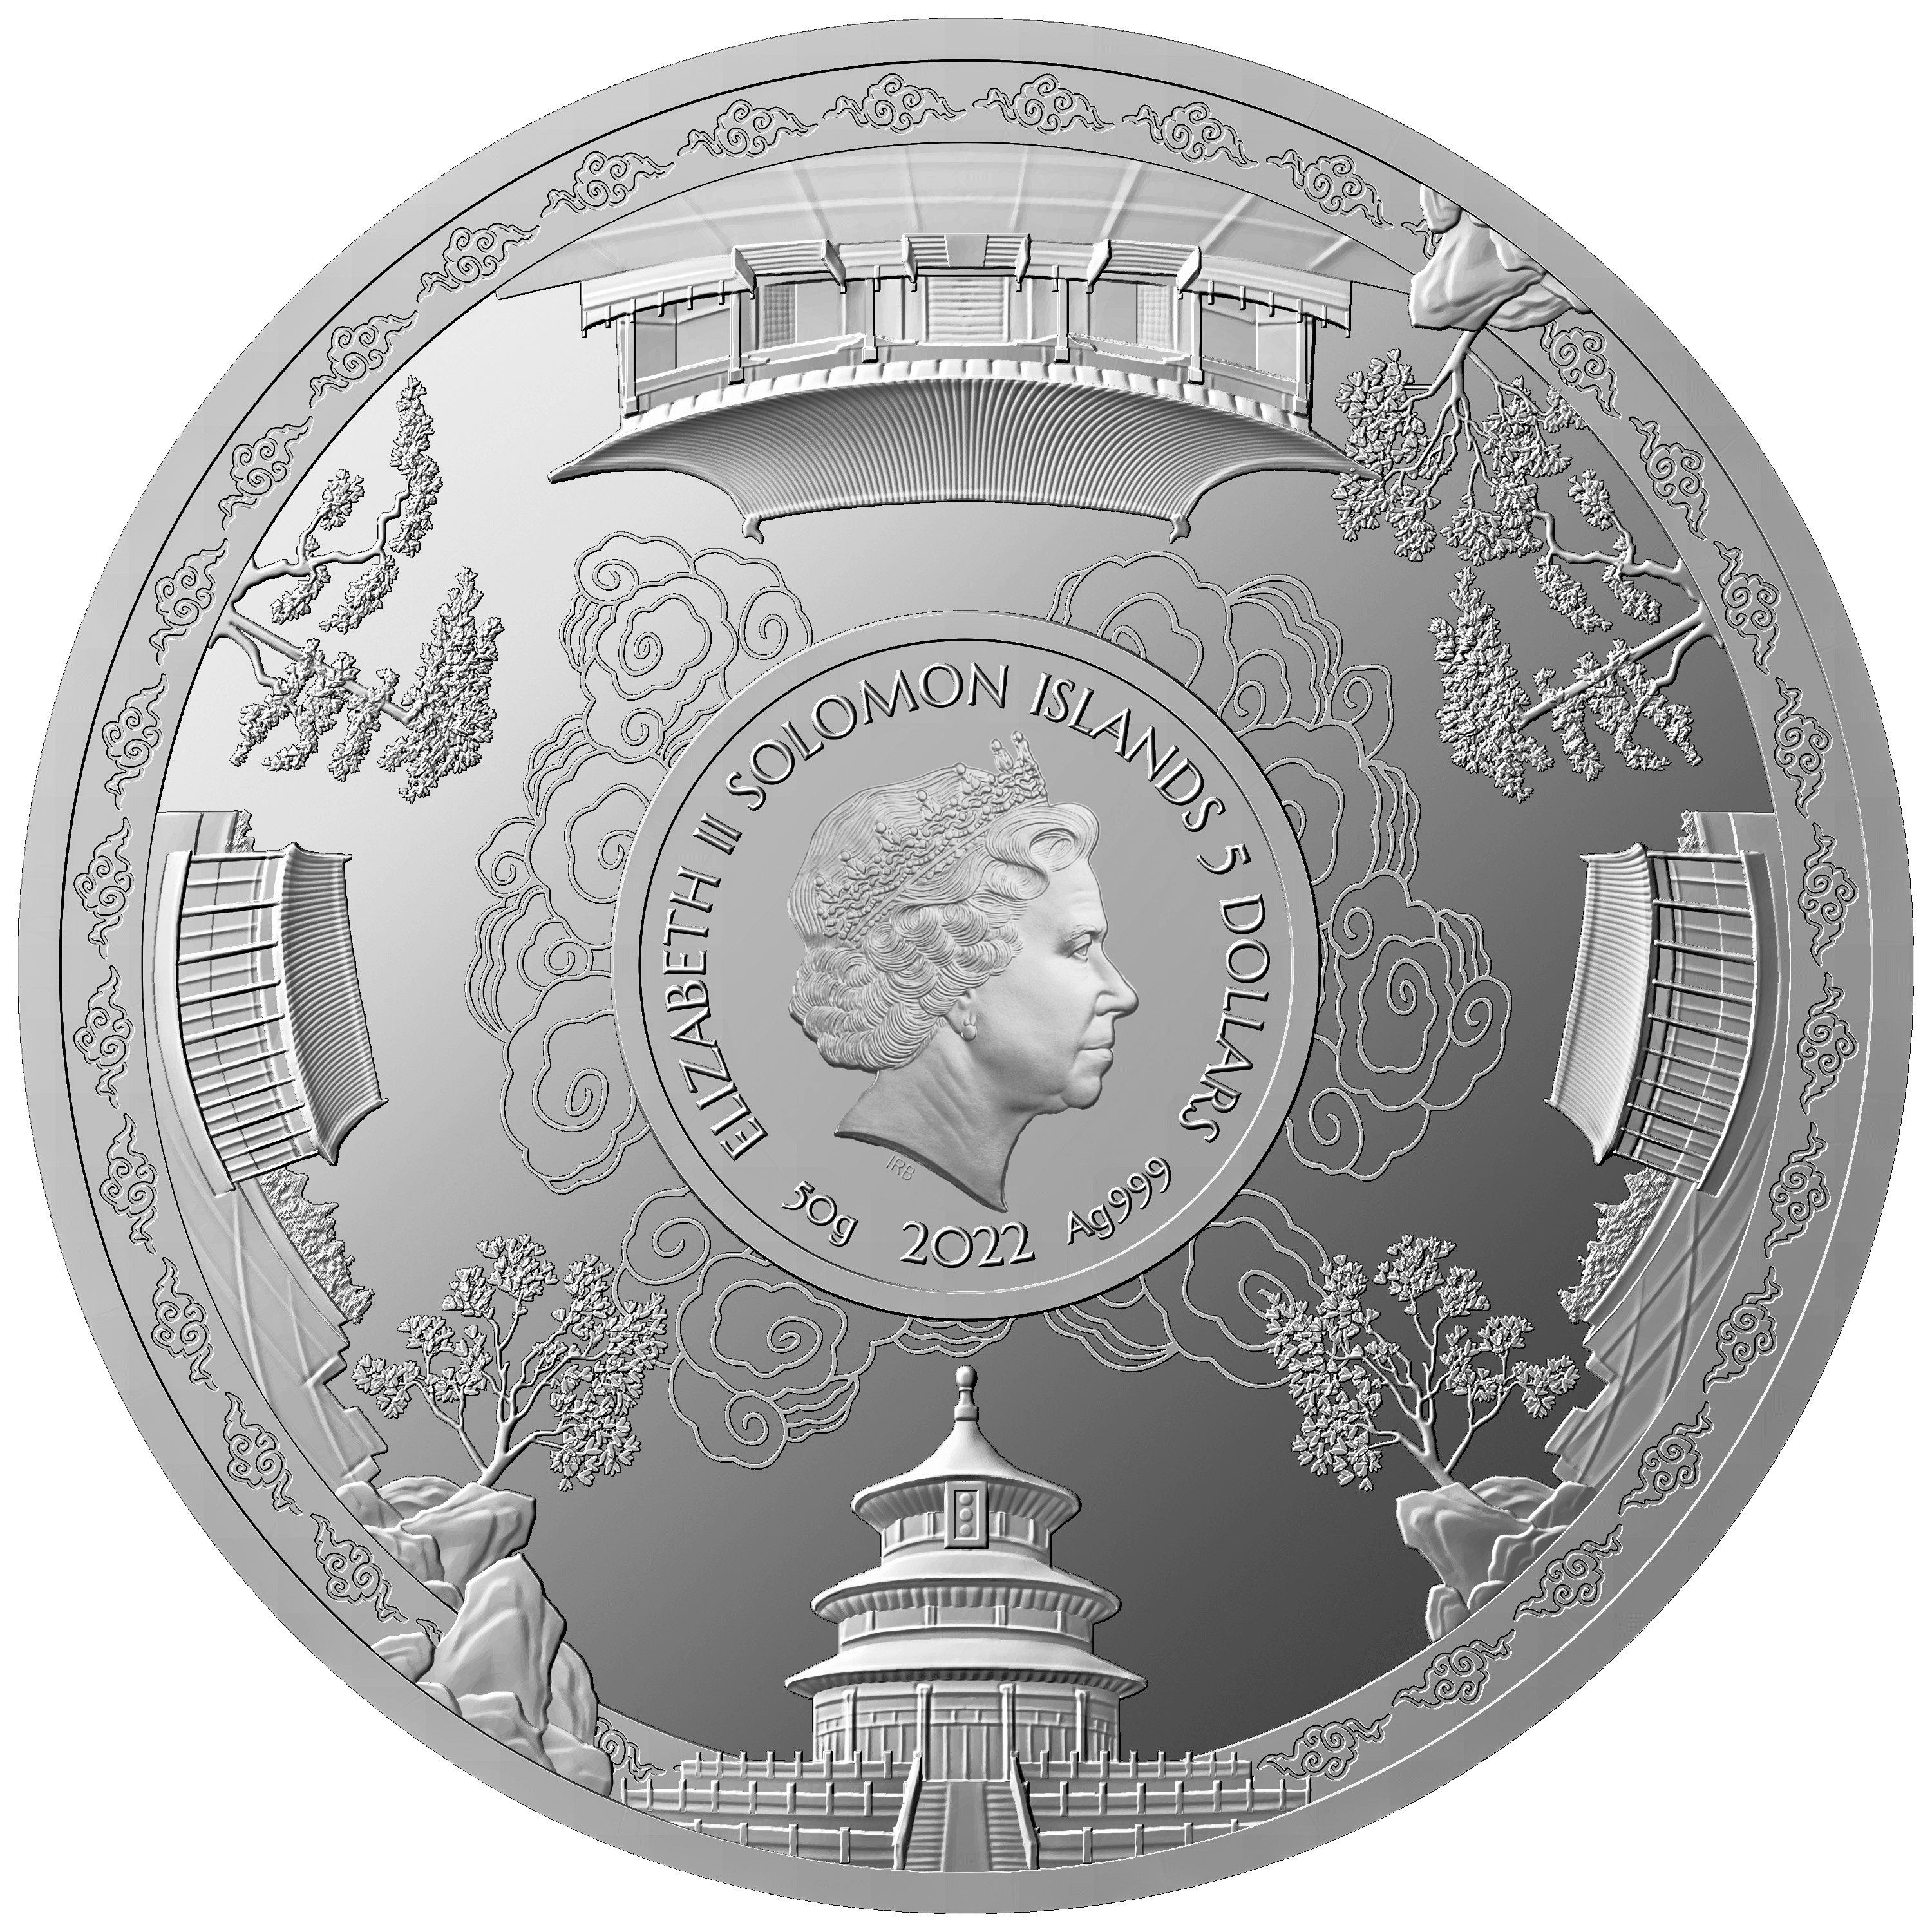 GOLD PANDA 40th Anniversary Silver Coin $5 Solomon Islands 2022 - PARTHAVA COIN